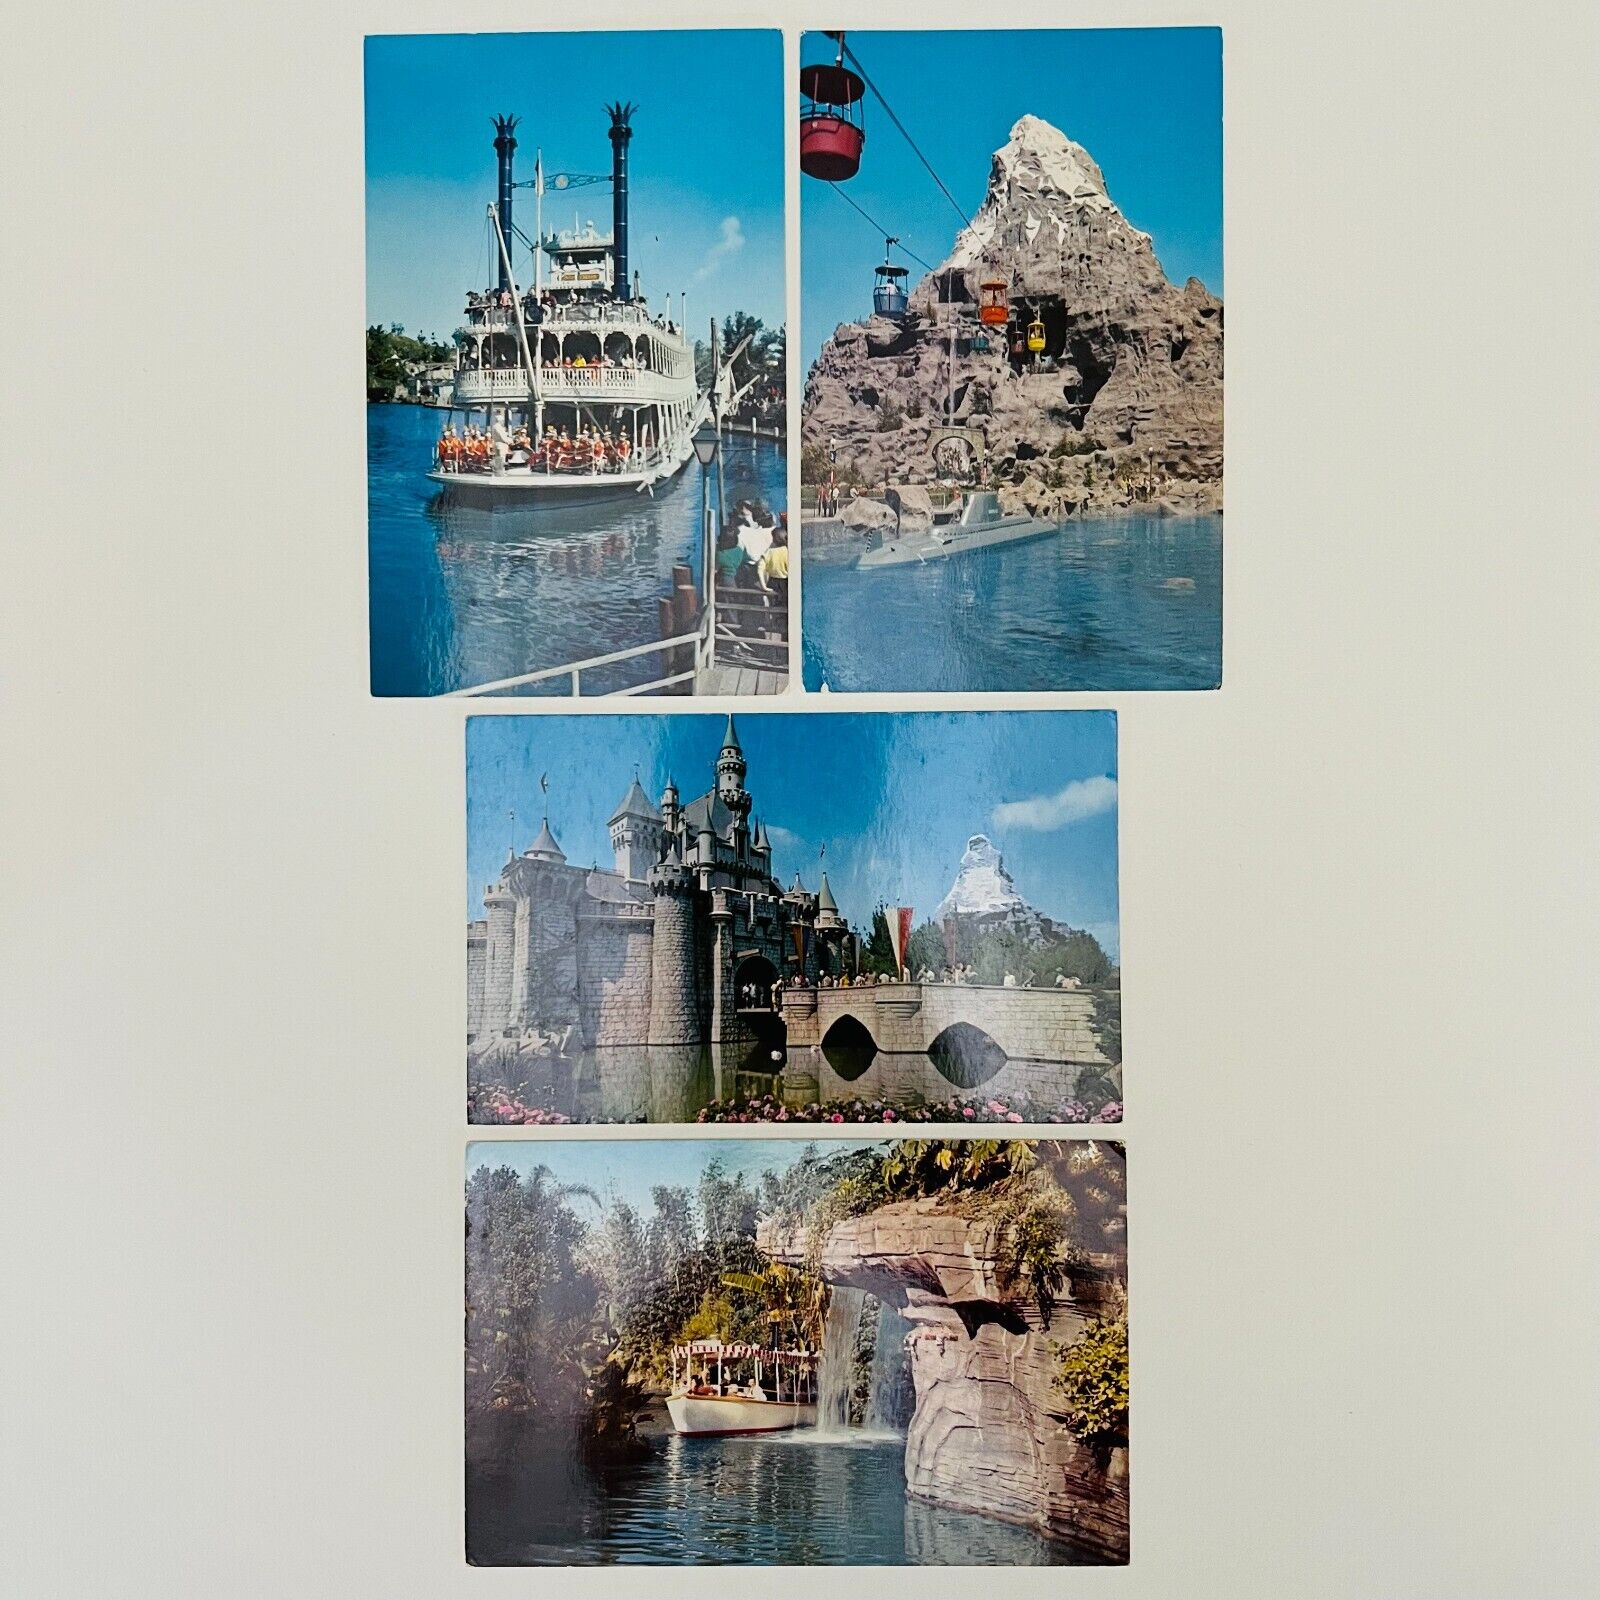 Lot of 4 Vintage Disneyland Postcards - Castle - Steamboat - Jungle - Matterhorn